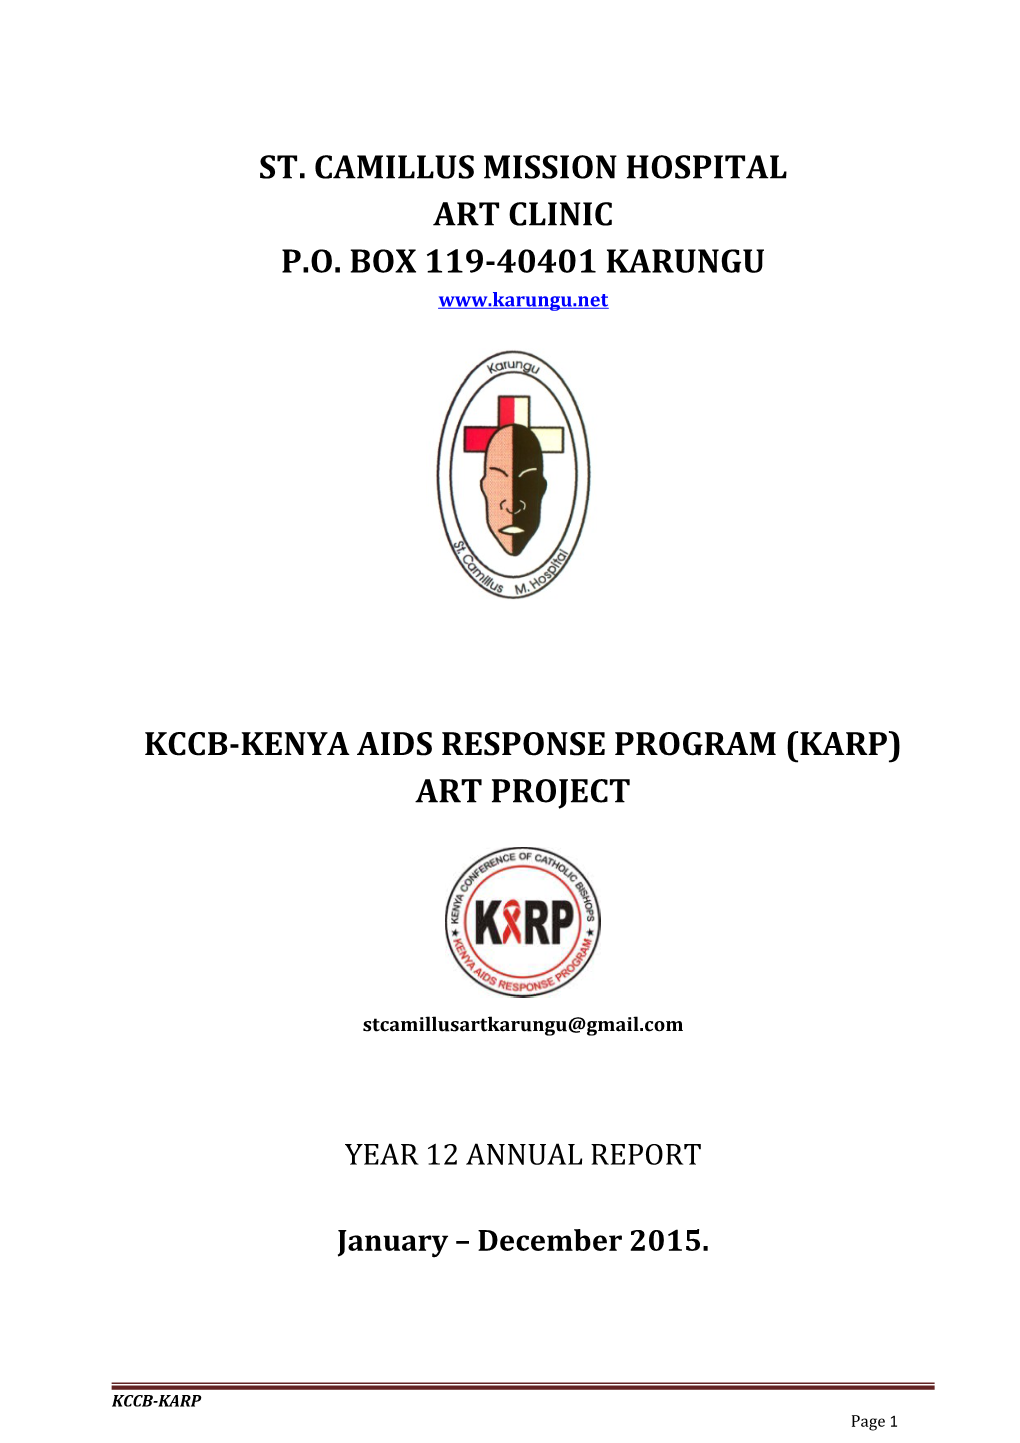 Kccb-Kenya Aids Response Program (Karp)